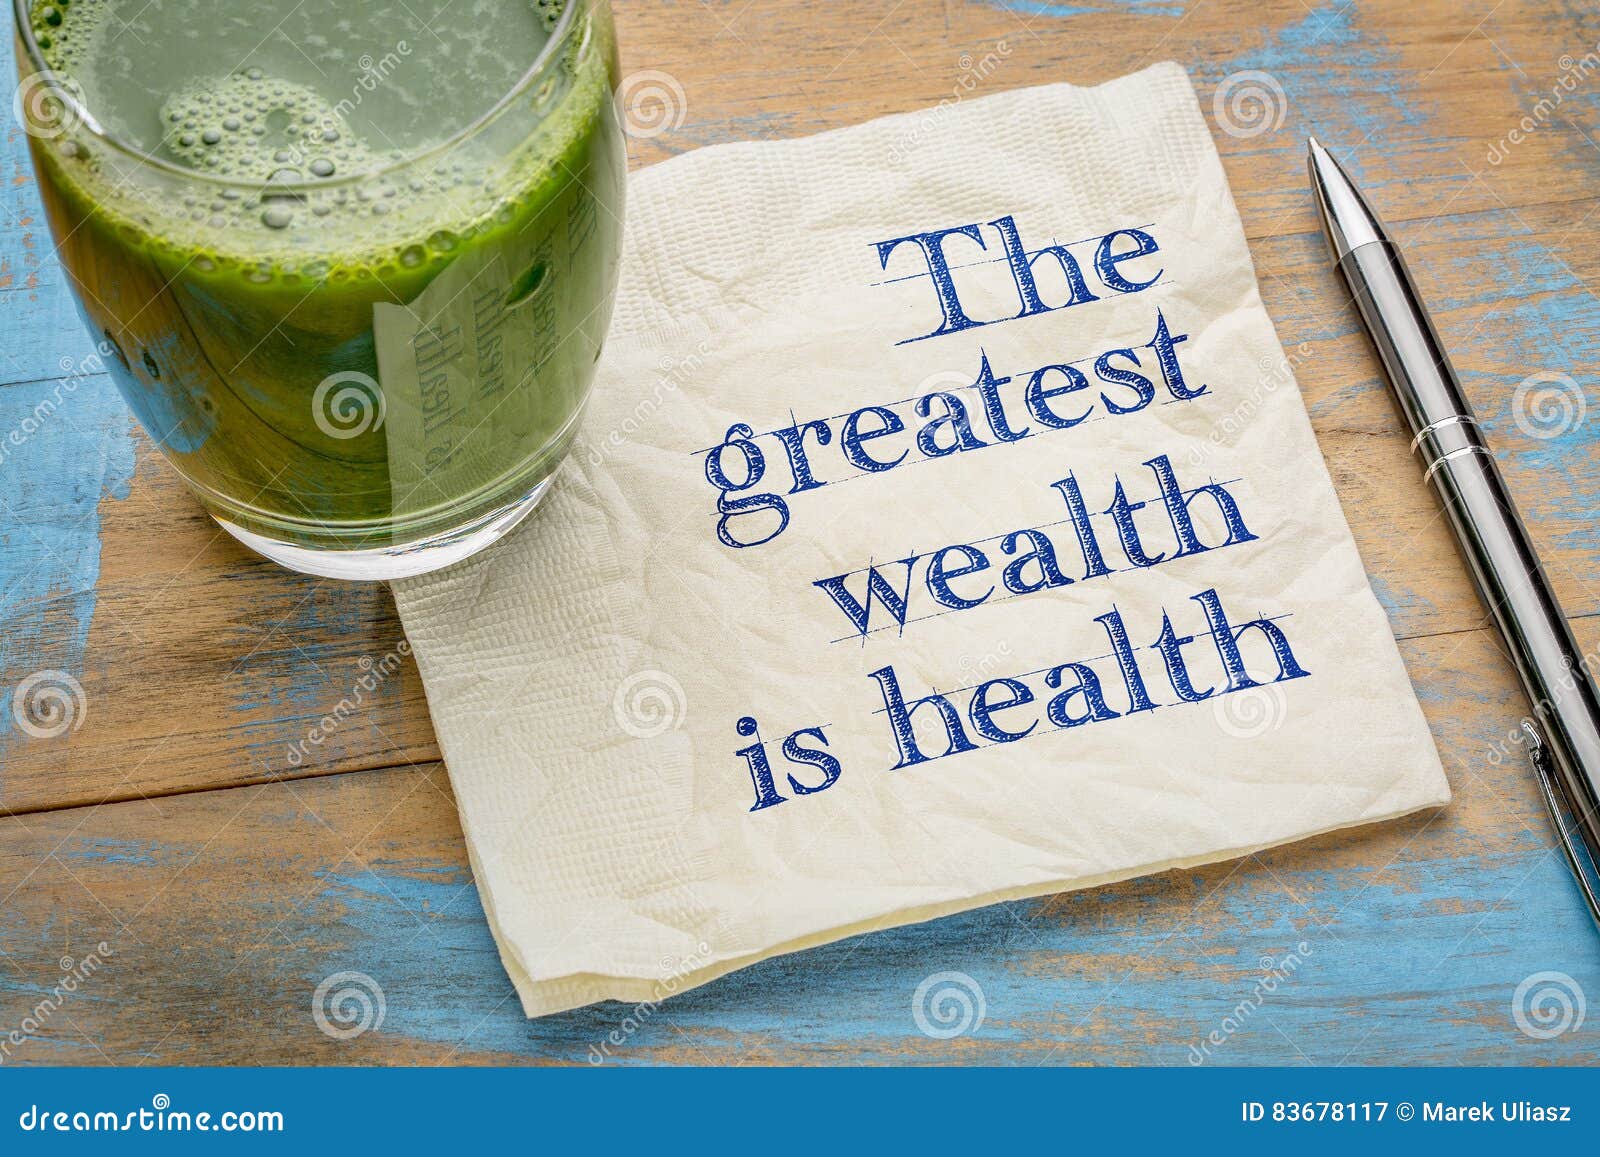 Здоровье главное богатство картинки